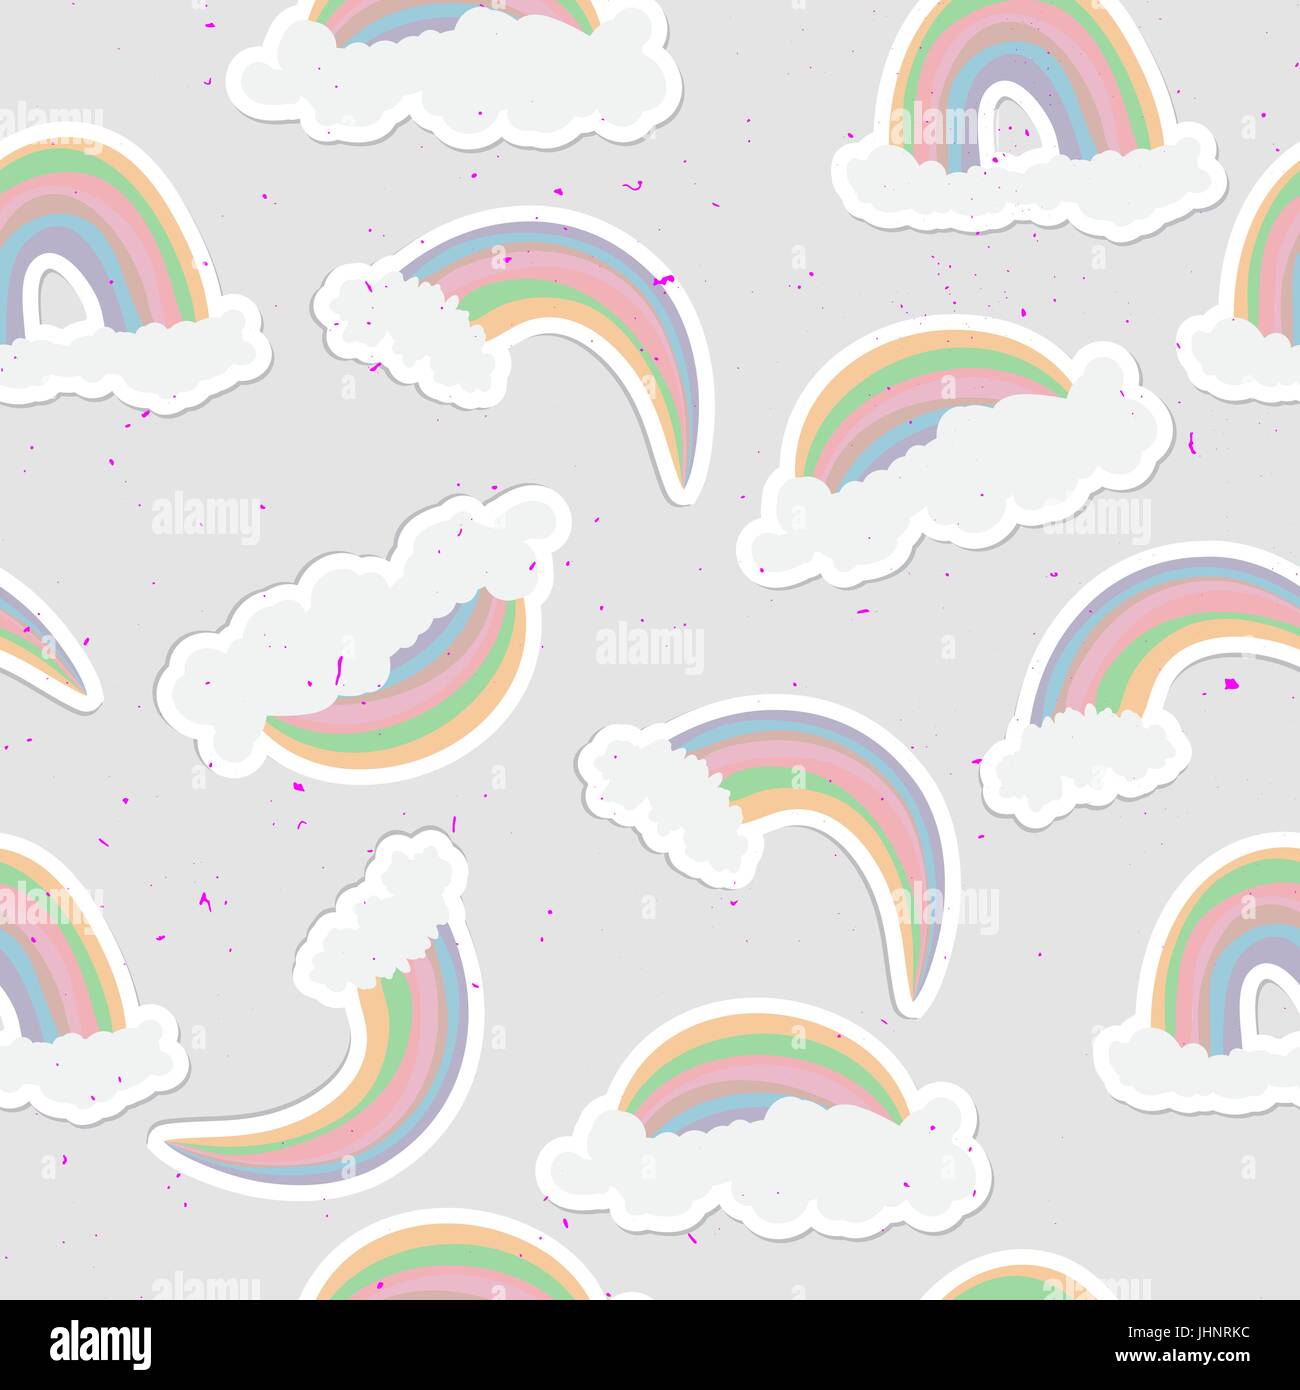 Niedlichen Regenbogen Musterdesign. Süße Regenbogen und Wolken-Hintergrund Stock Vektor